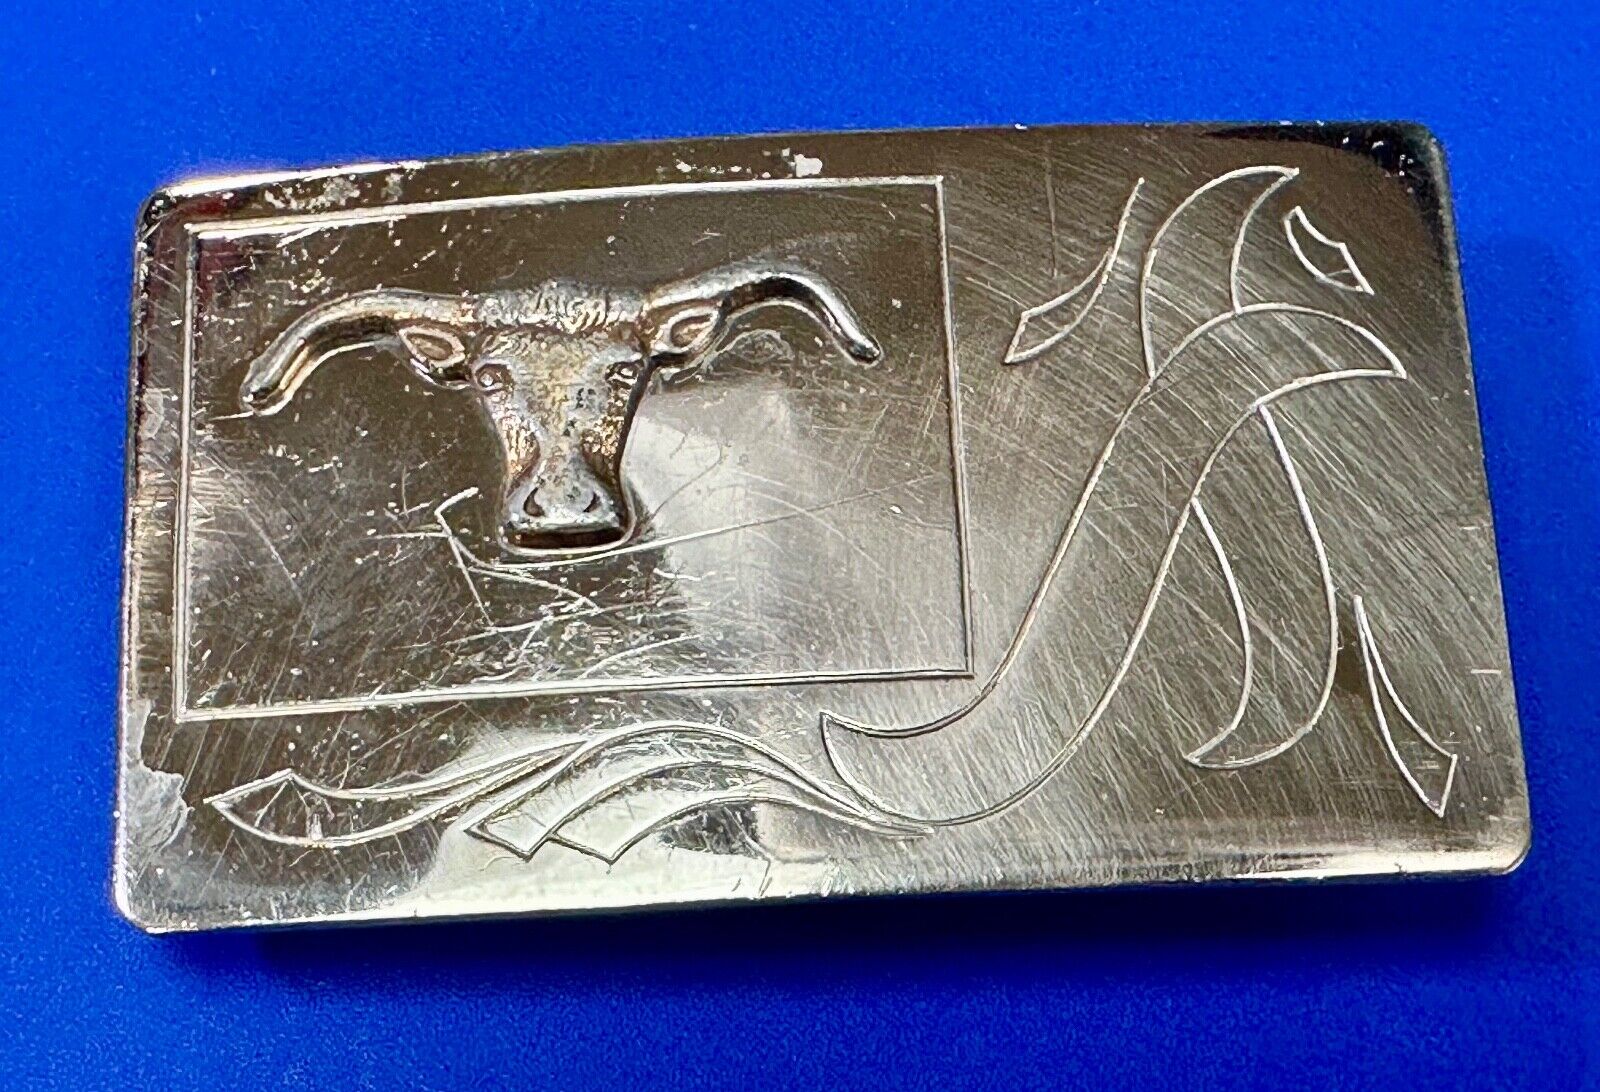 Raised Texas Longhorn Beautiful nickel silver engraved ribbon belt buckle